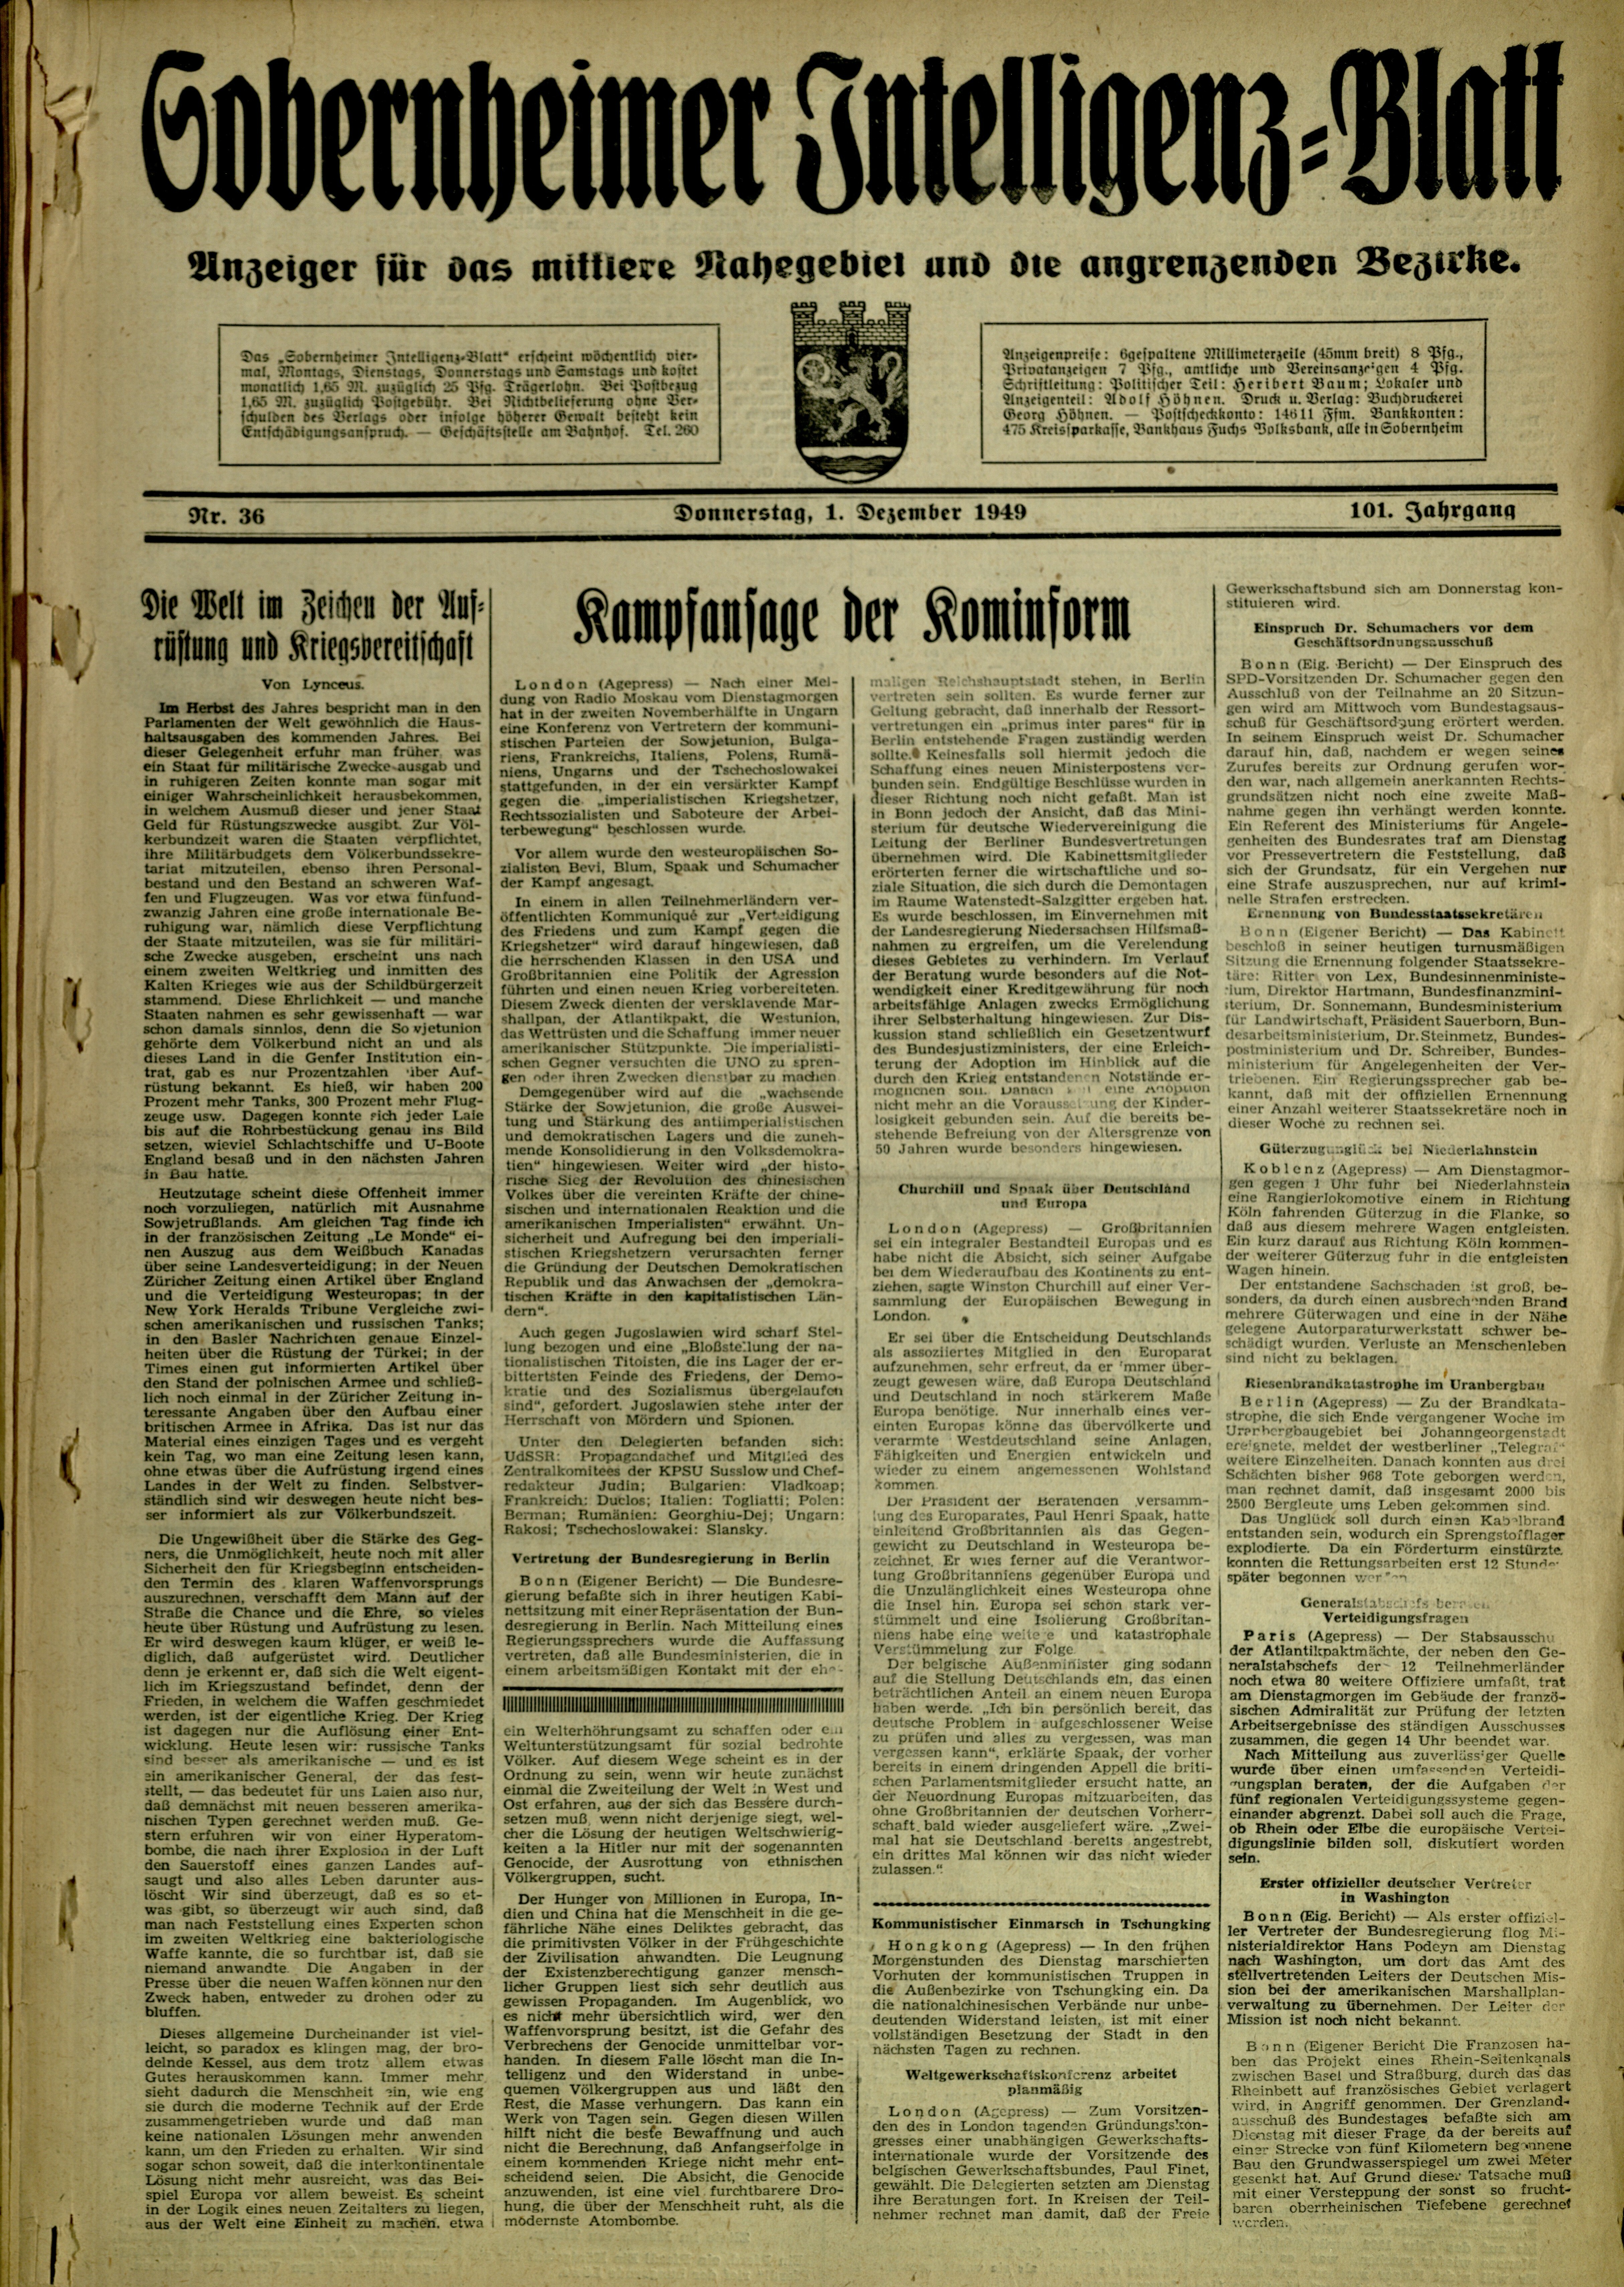 Zeitung: Sobernheimer Intelligenzblatt; Dezember 1949, Jg. 101 Nr. 36 (Heimatmuseum Bad Sobernheim CC BY-NC-SA)